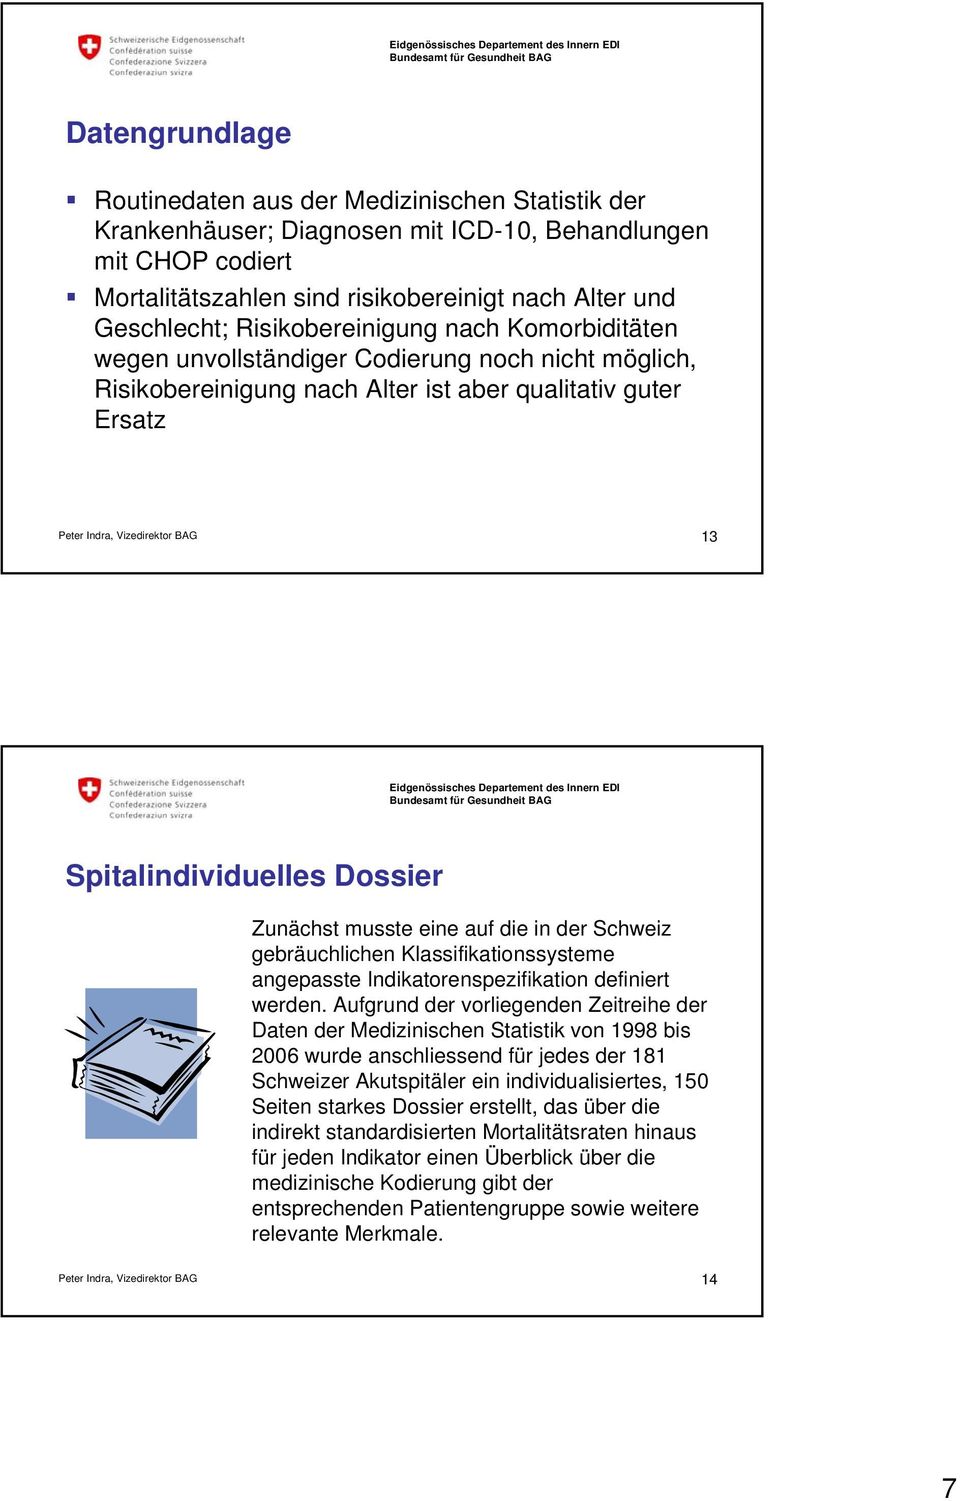 eine auf die in der Schweiz gebräuchlichen Klassifikationssysteme angepasste Indikatorenspezifikation definiert werden.